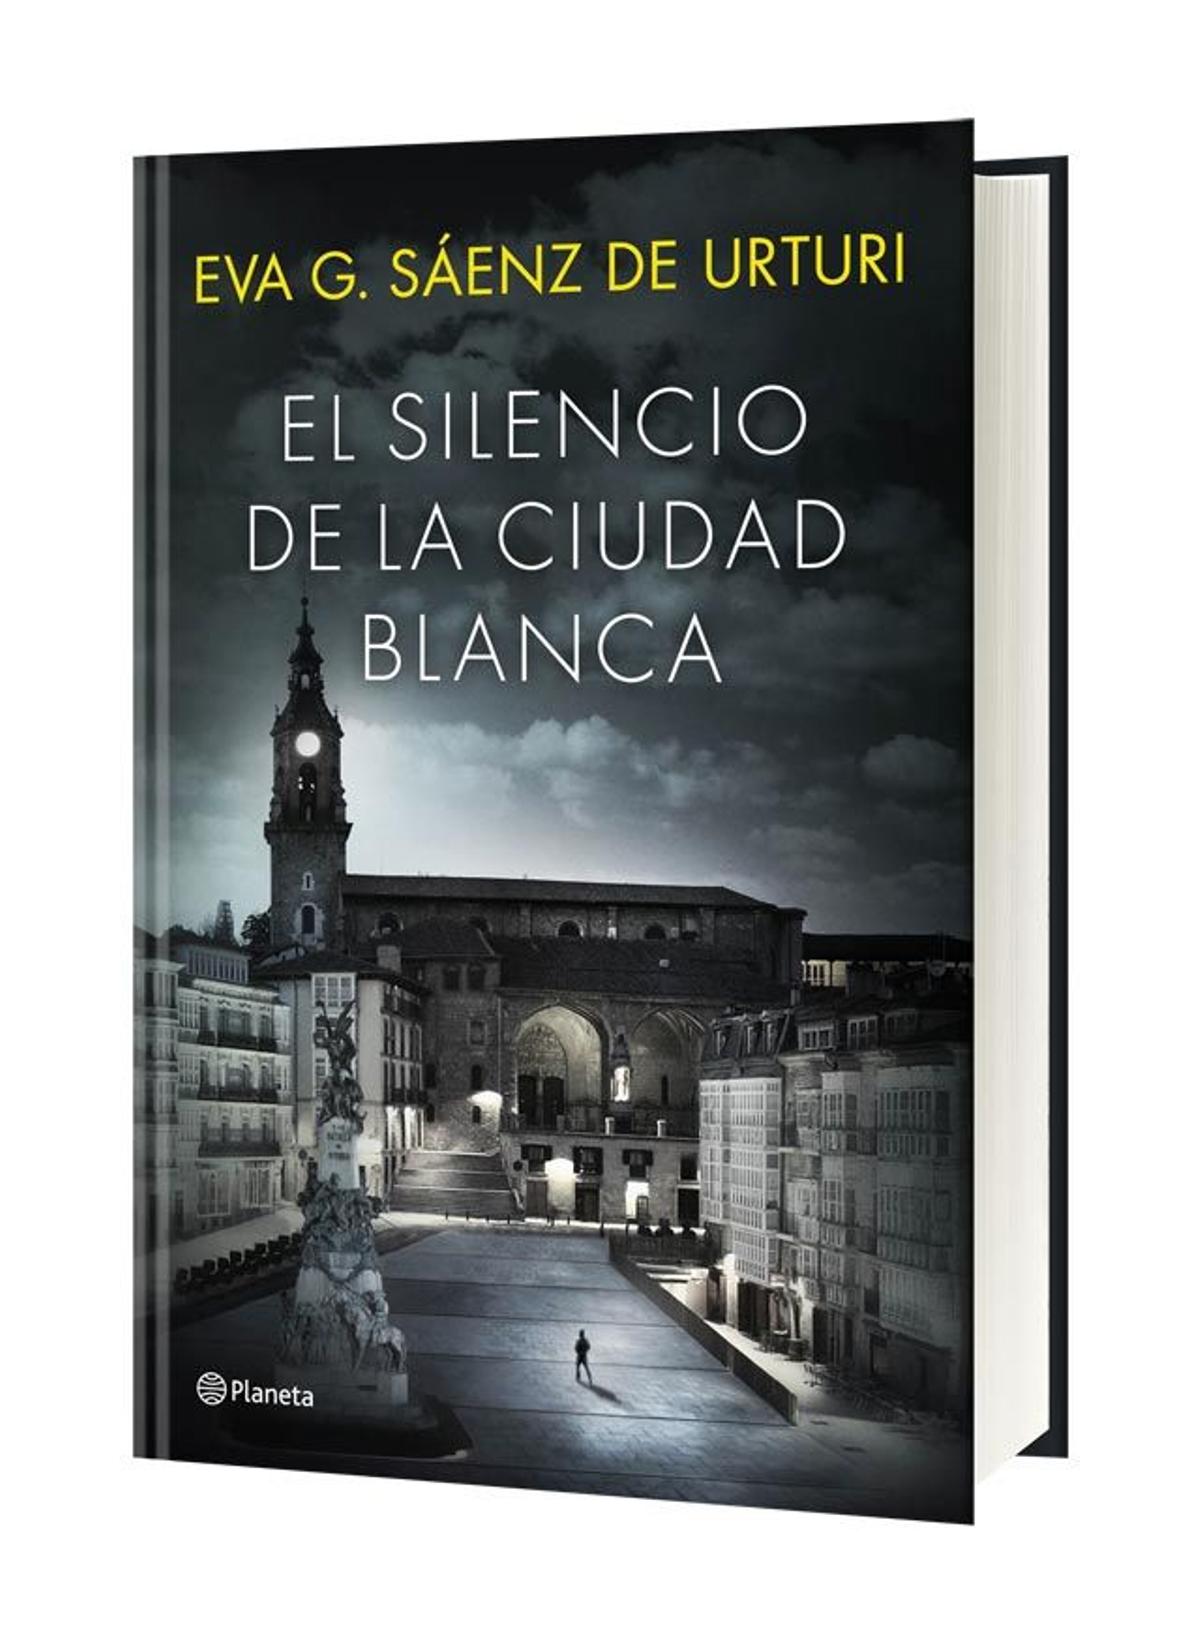 El silencio de la ciudad blanca, de Eva Gª Saenz de Urturi